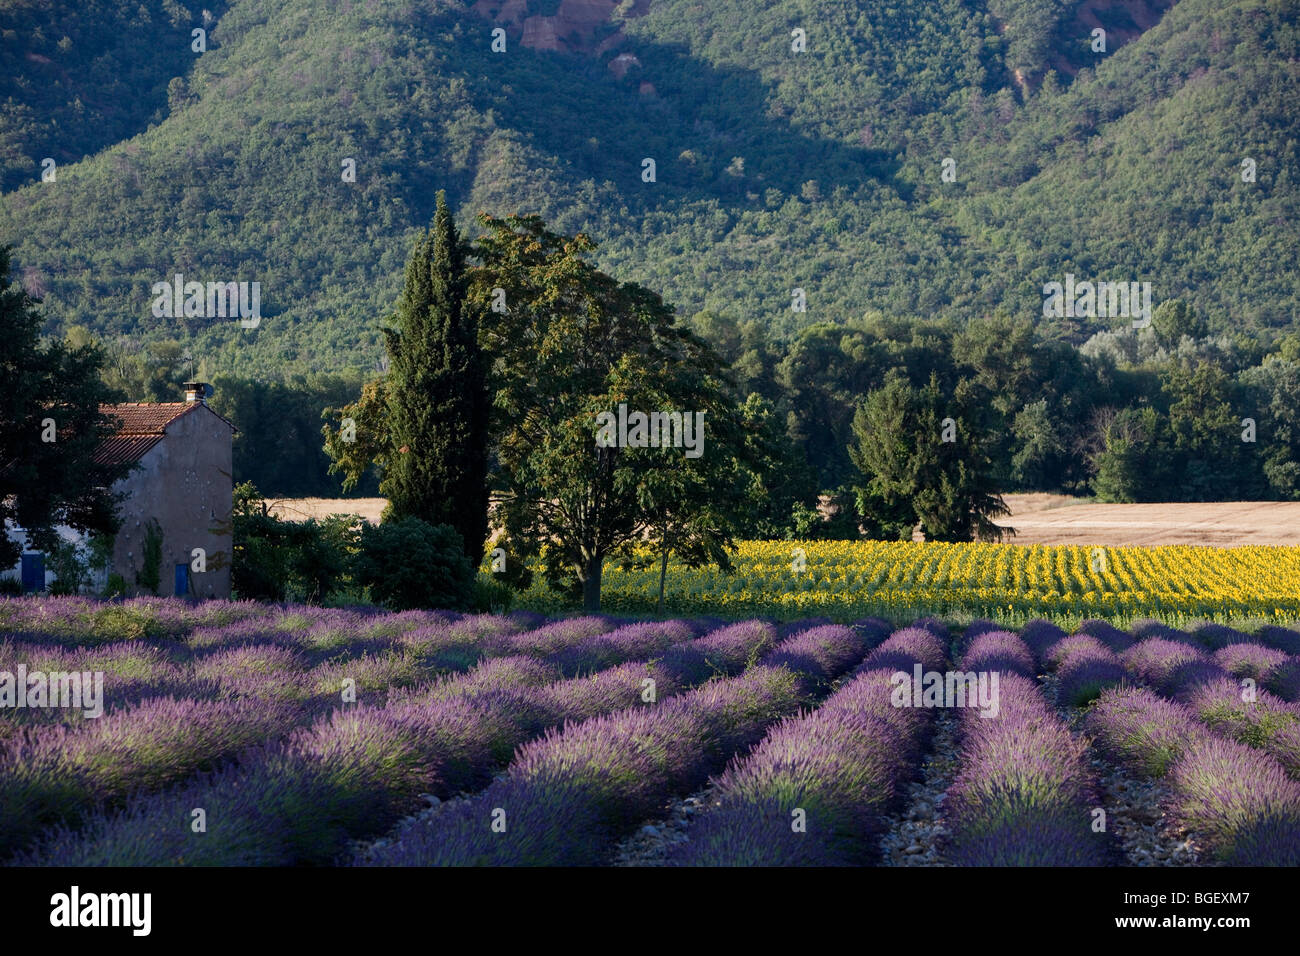 France. Provence.Valensole région. Lavender fields. Stock Photo